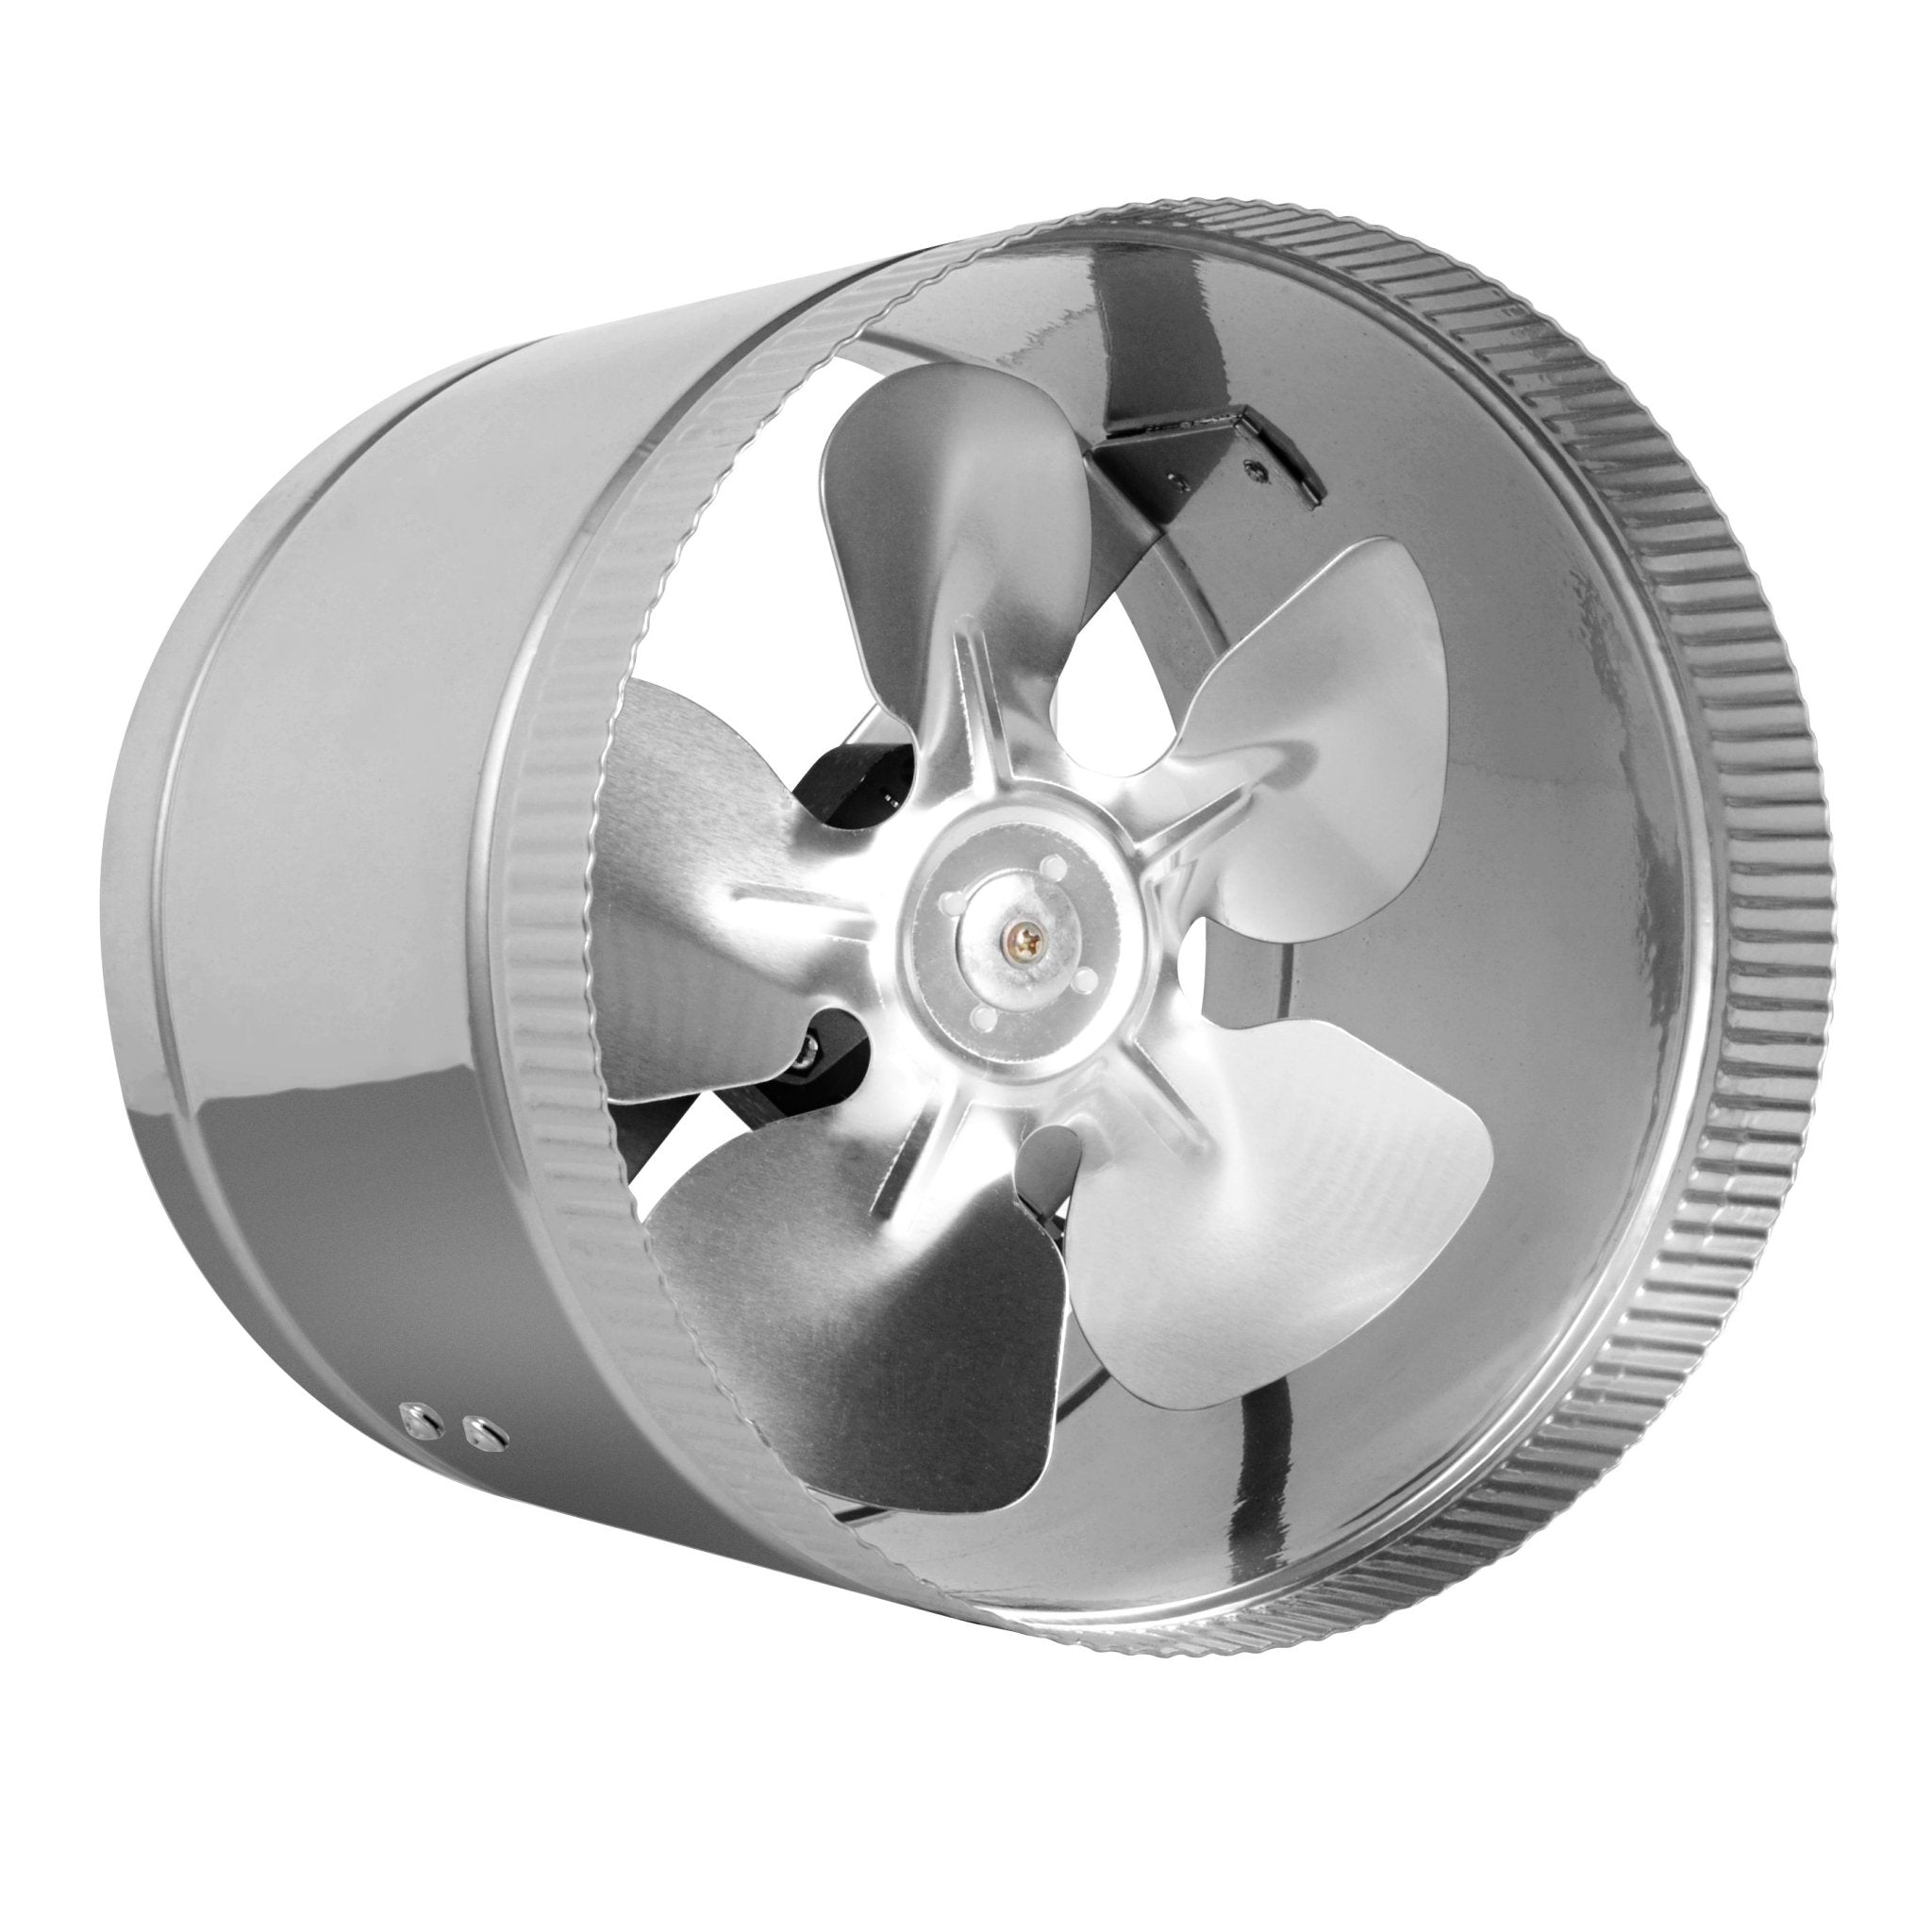 Inline Duct Fan. Вентилятор 400/200. FD-400 вентилятор. Вентилятор Ice line.